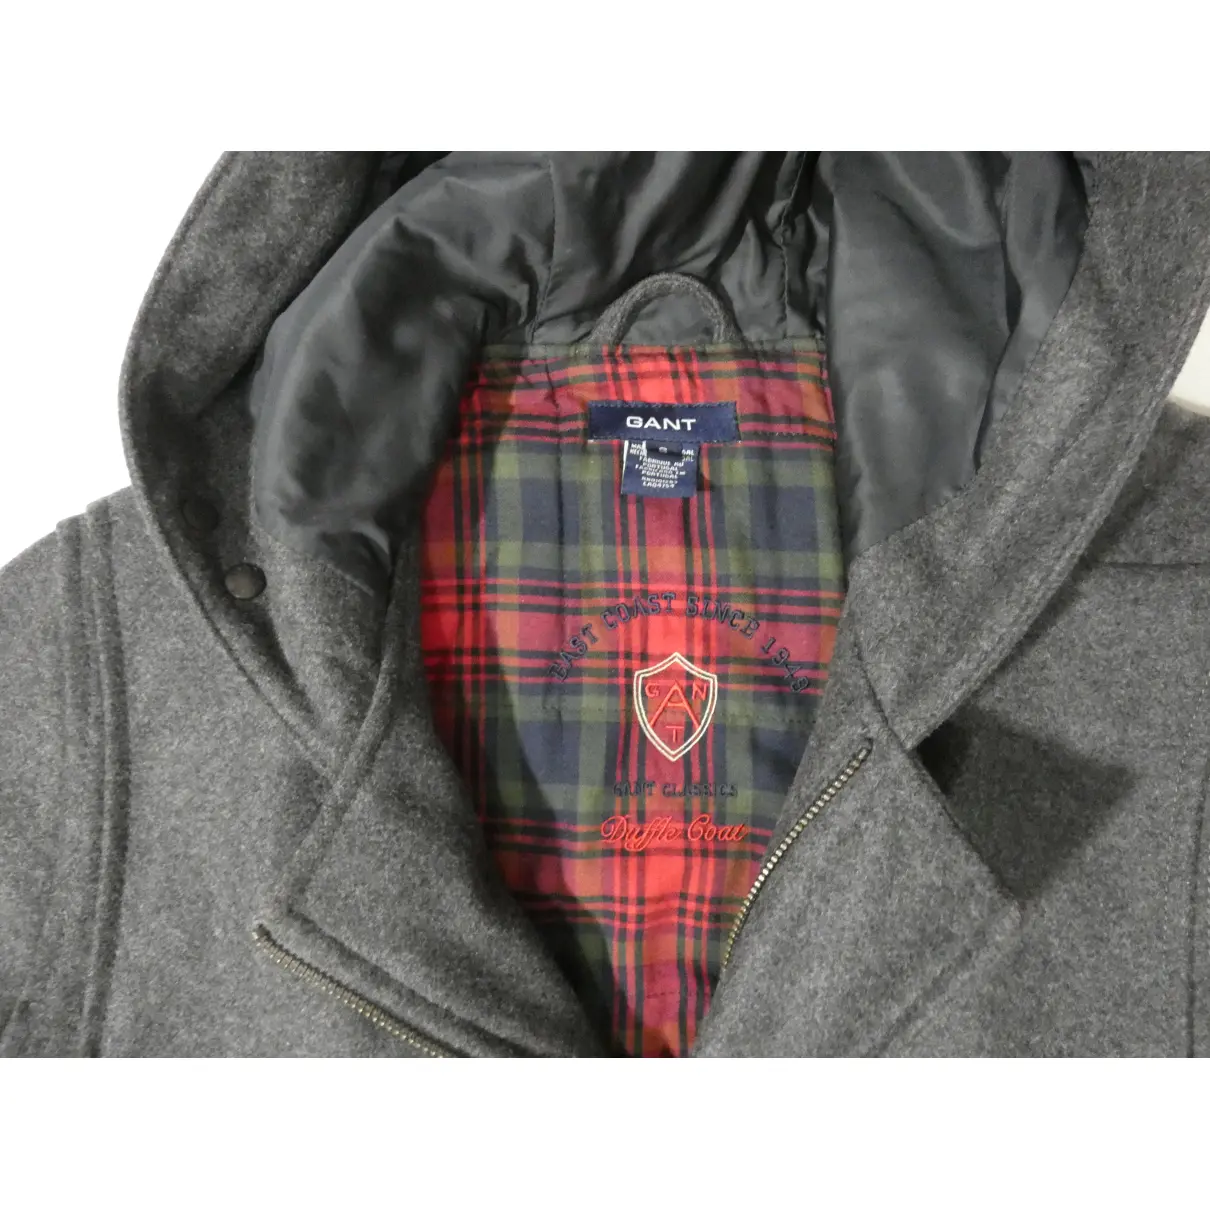 Buy Gant Wool dufflecoat online